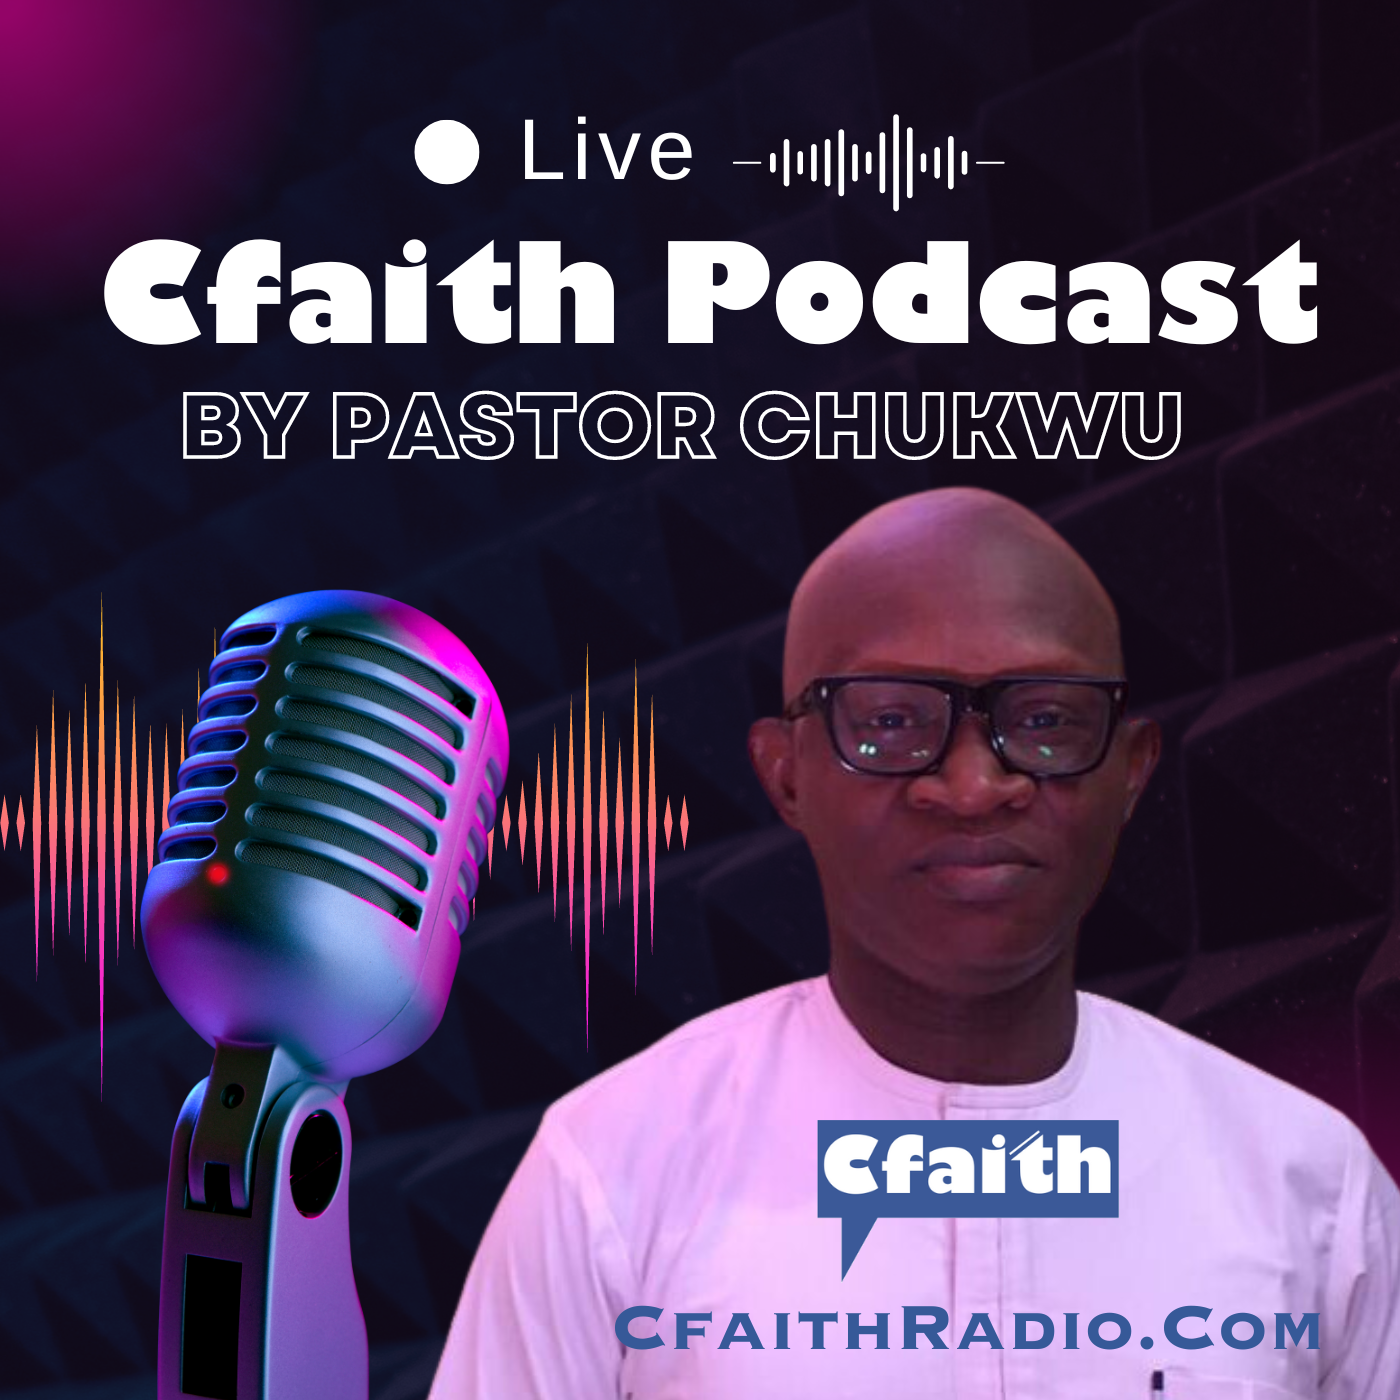 Profile of Pst Chukwu Chibueze - Cfaith President 21